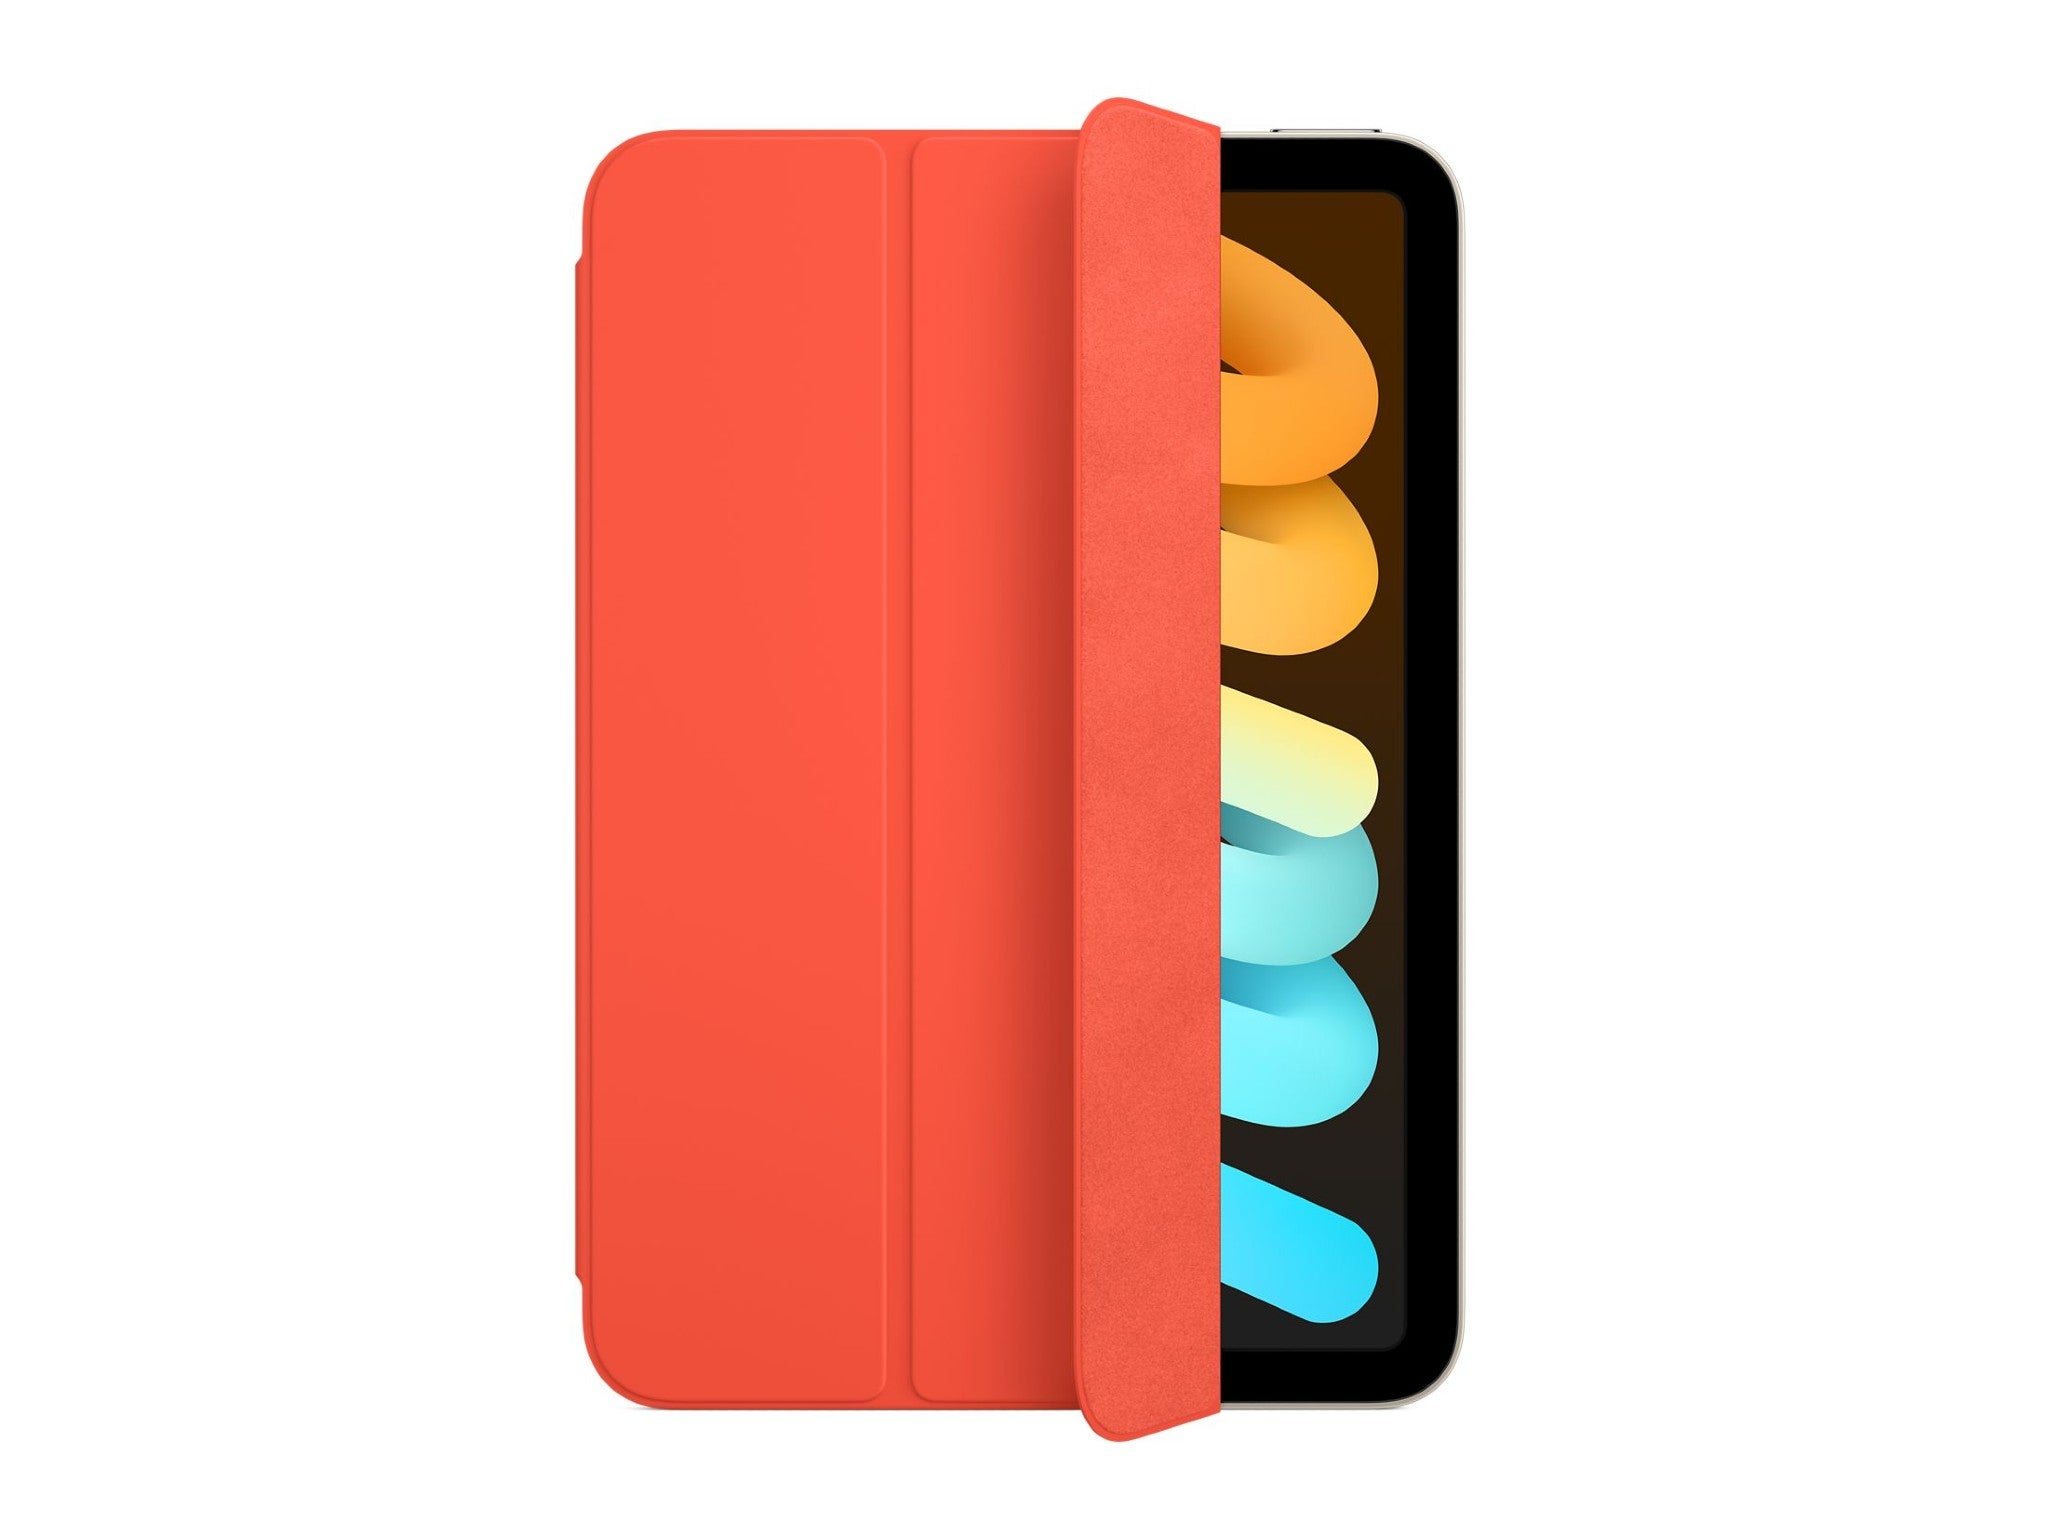 Apple smart folio for iPad mini indybest.jpg